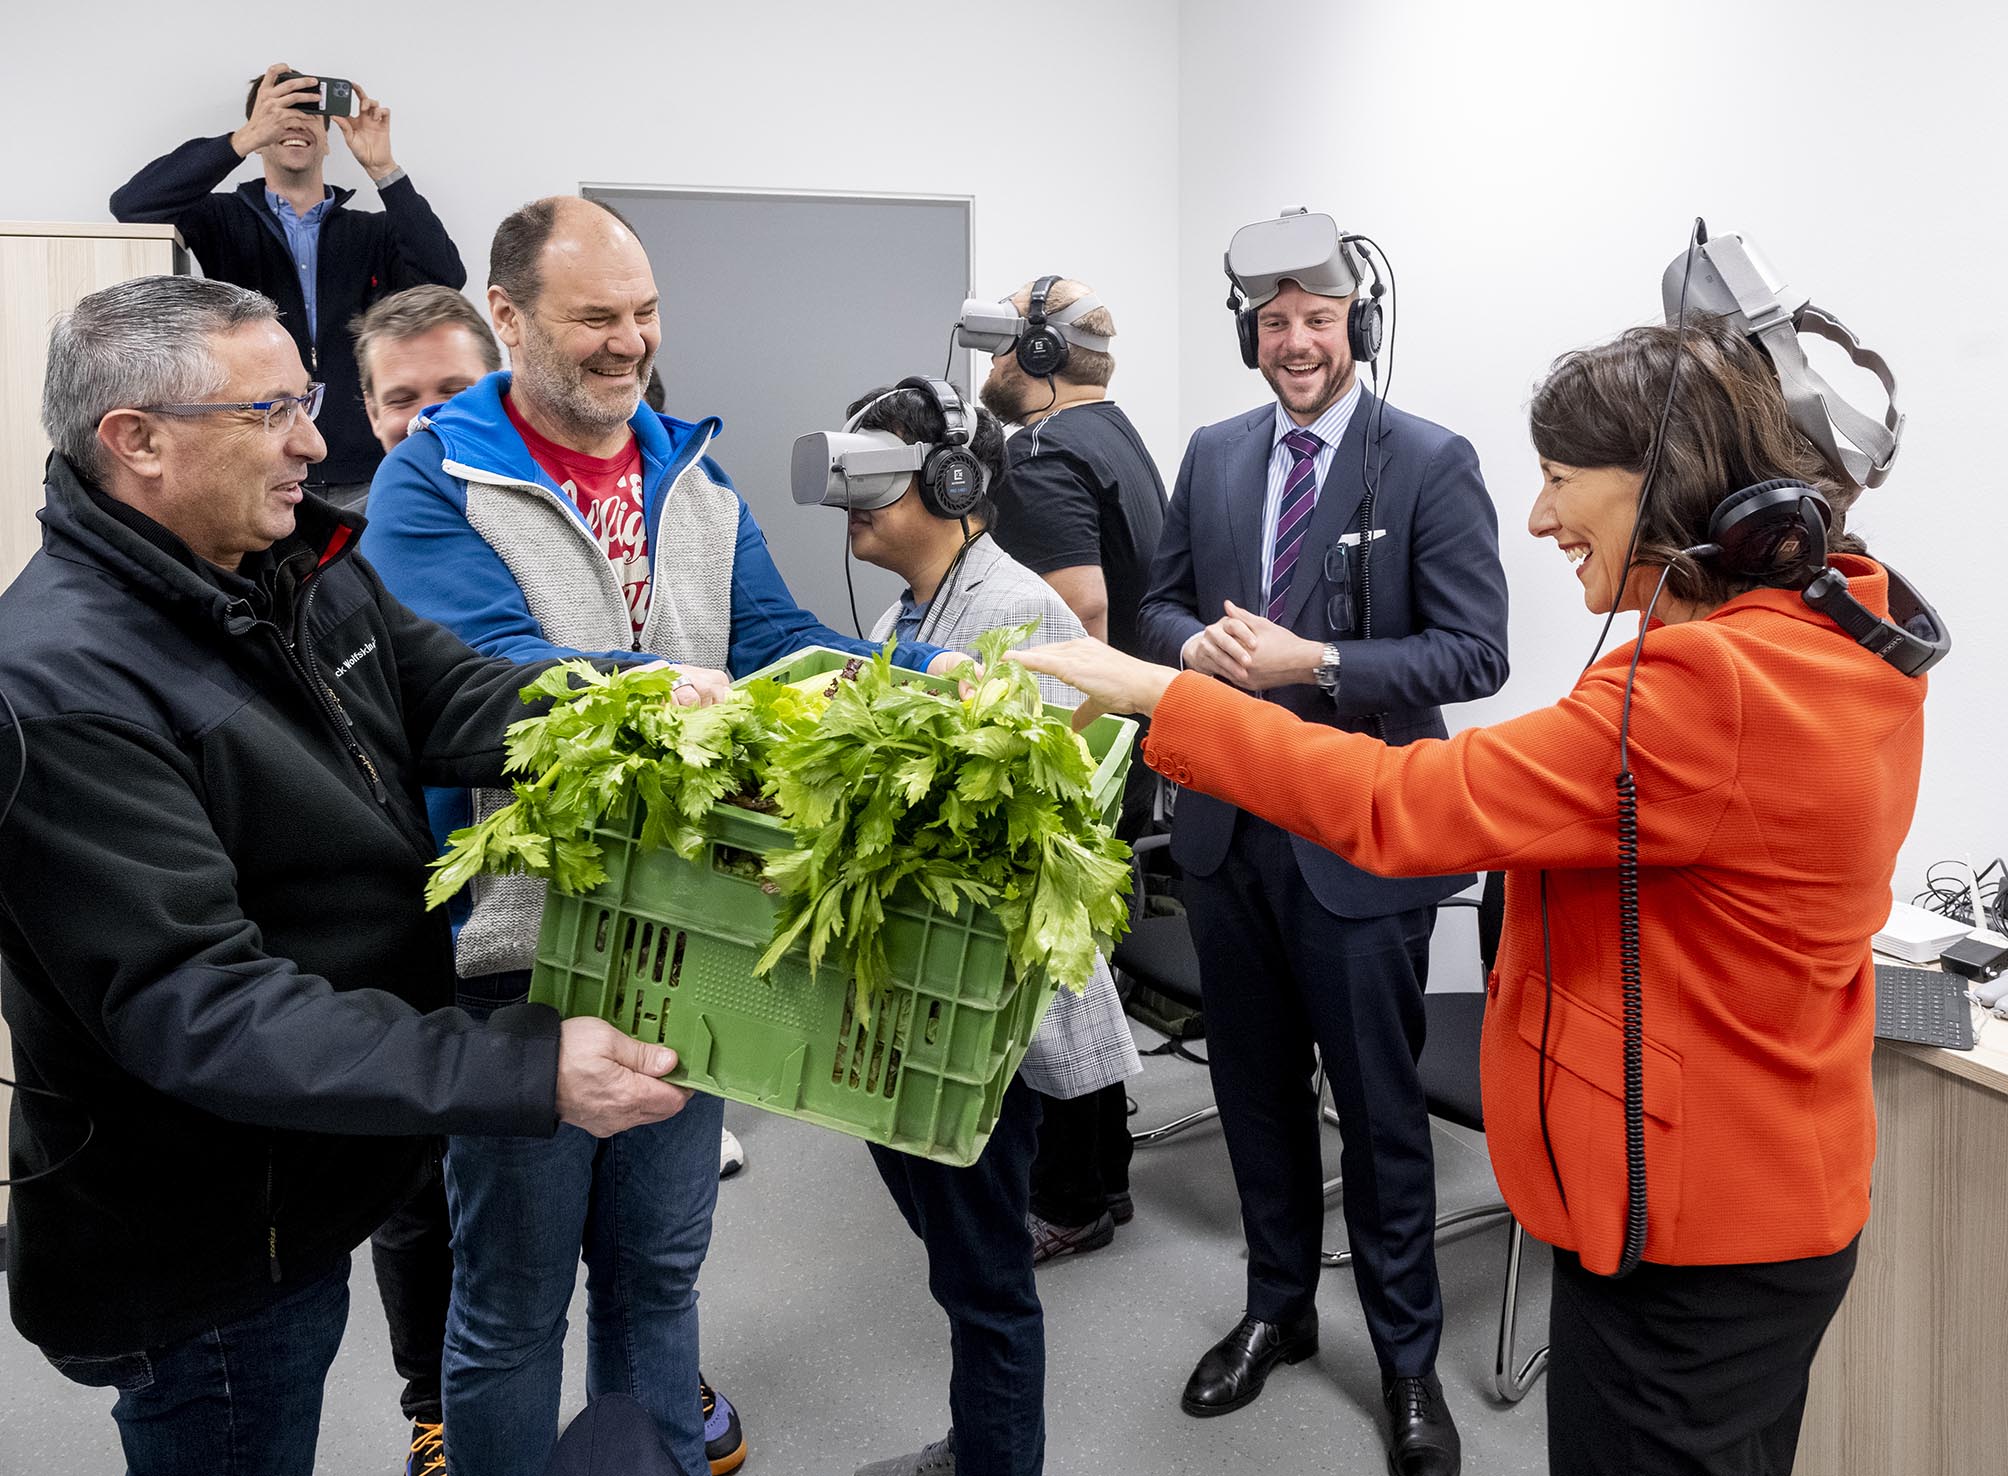 Ministerin bekommt nach VR-Test Gemüsekorb überreicht